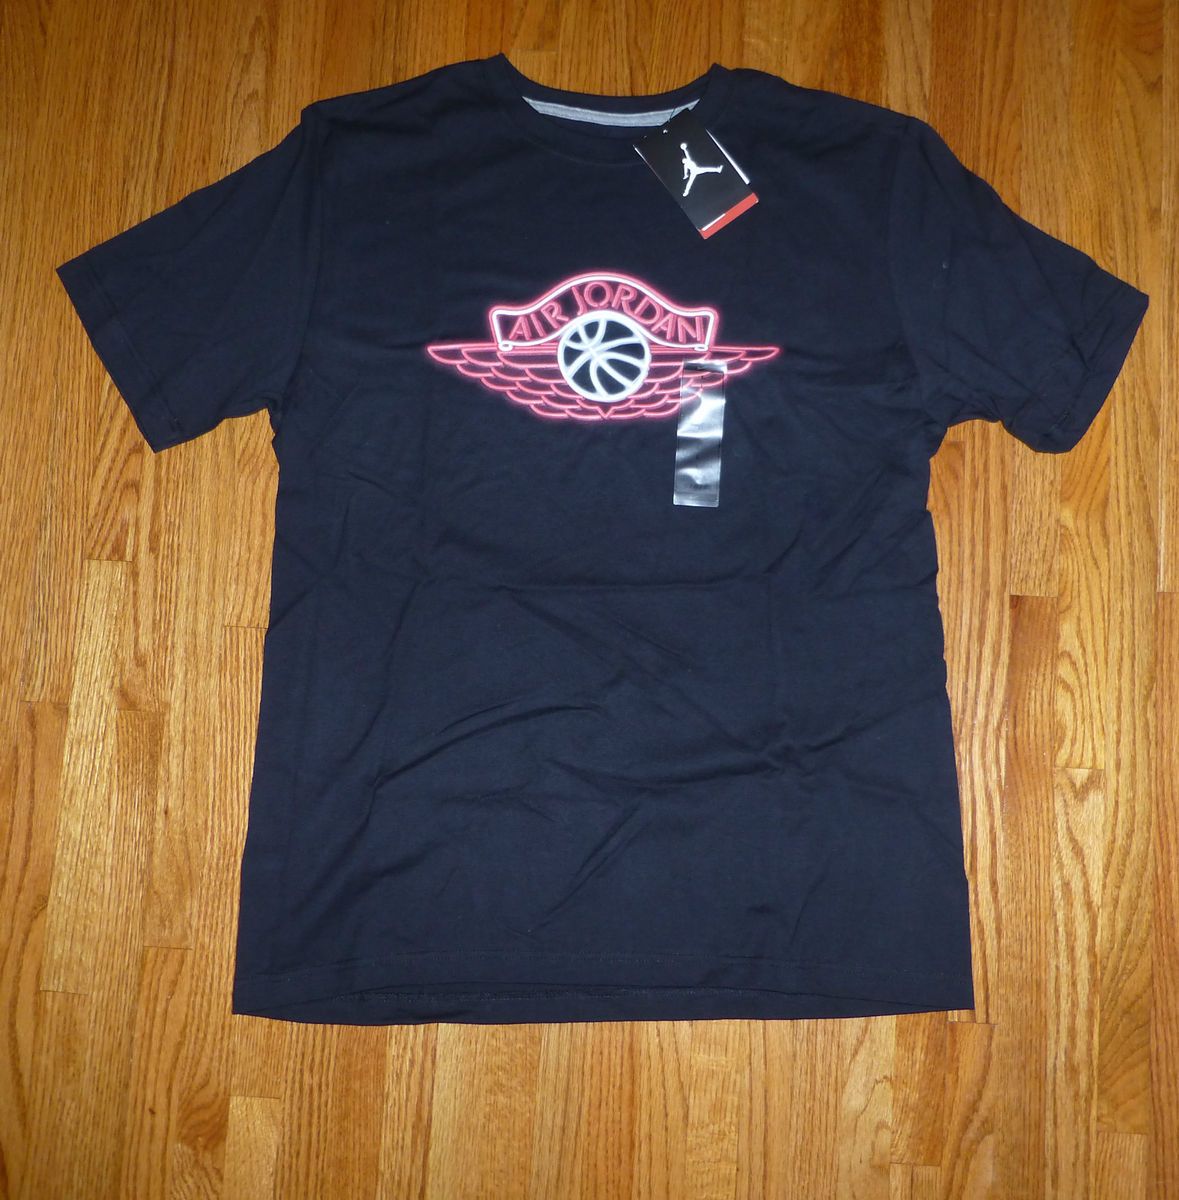  Air Jordan Black Neon Wings Glow in the Dark Basketball T Shirt Large